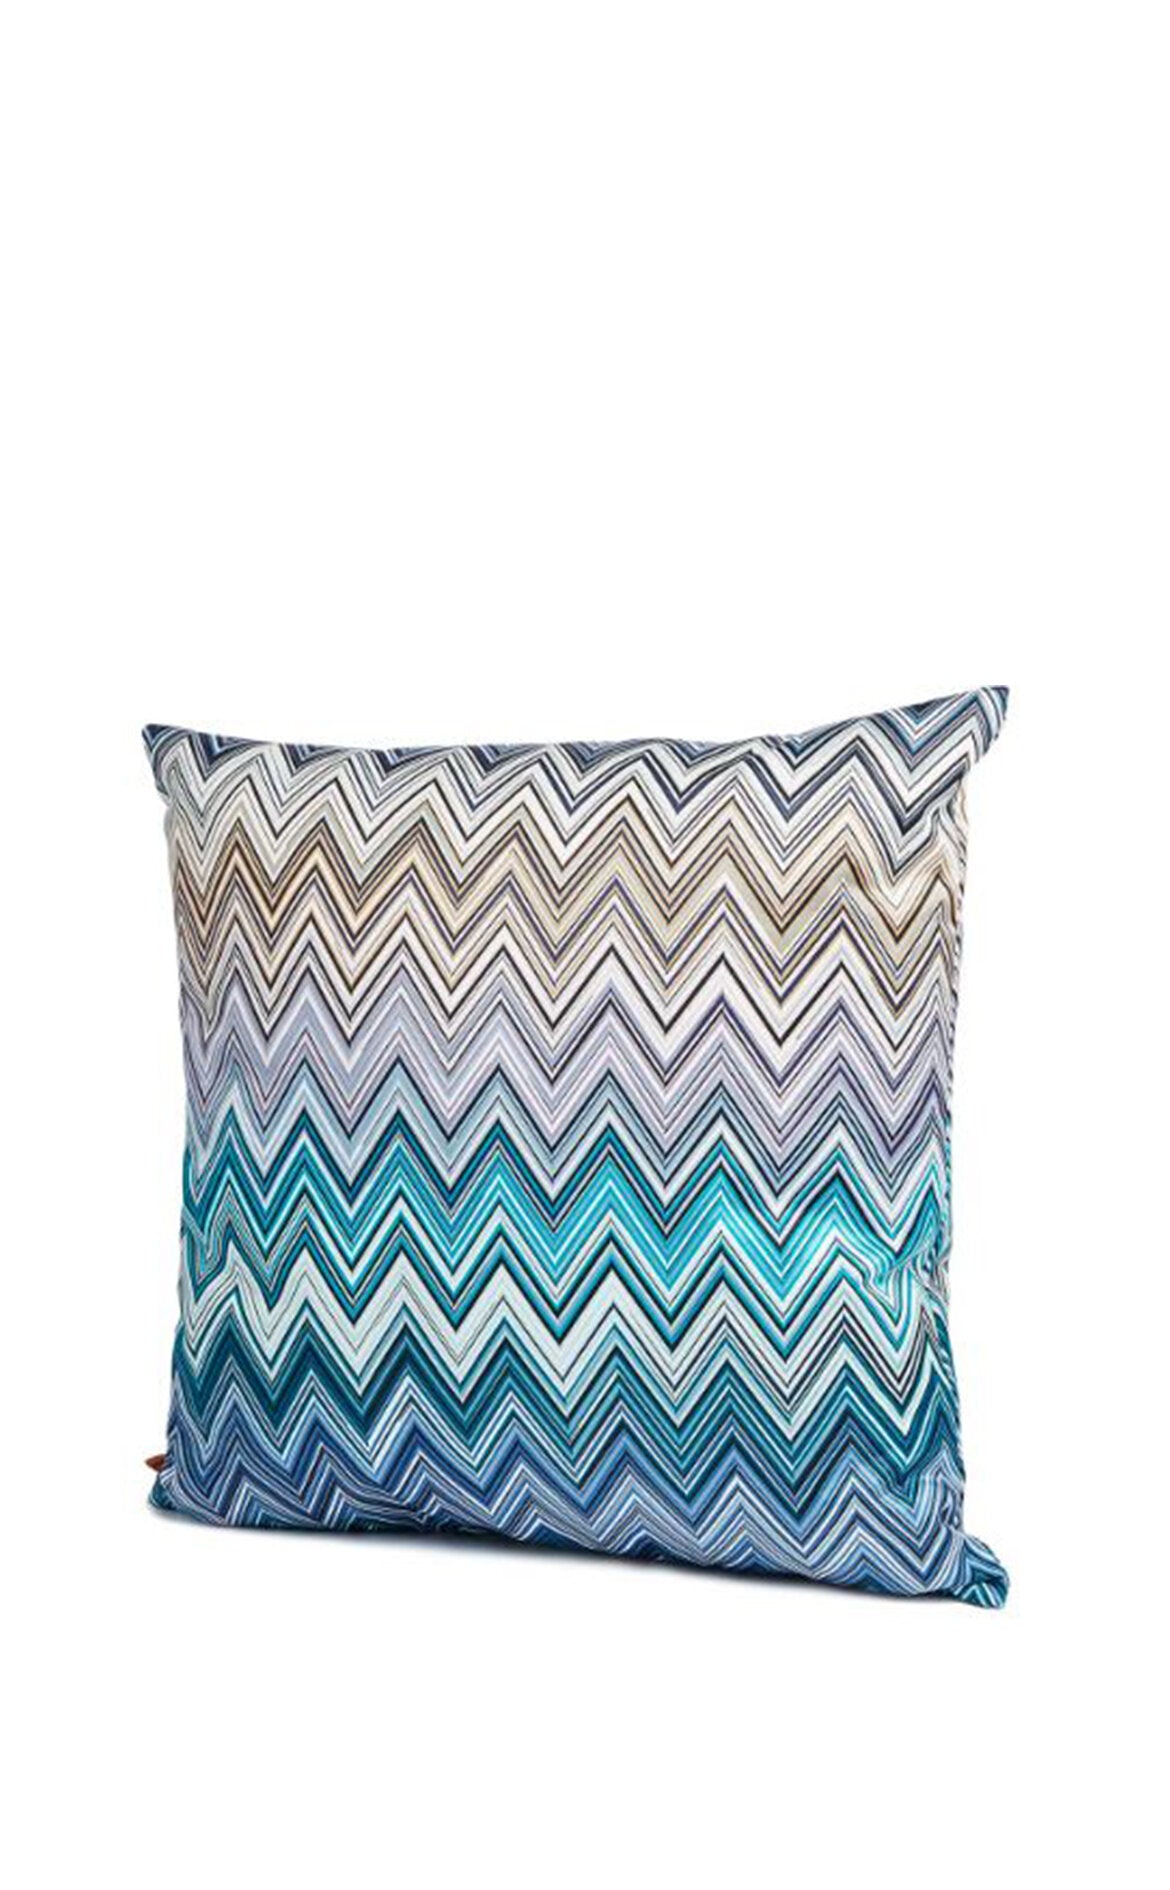 MISSONI HOME Jarris 150 - Çok Renkli Zigzag Desen Dekoratif Yastık 40x40 cm D’Maison 